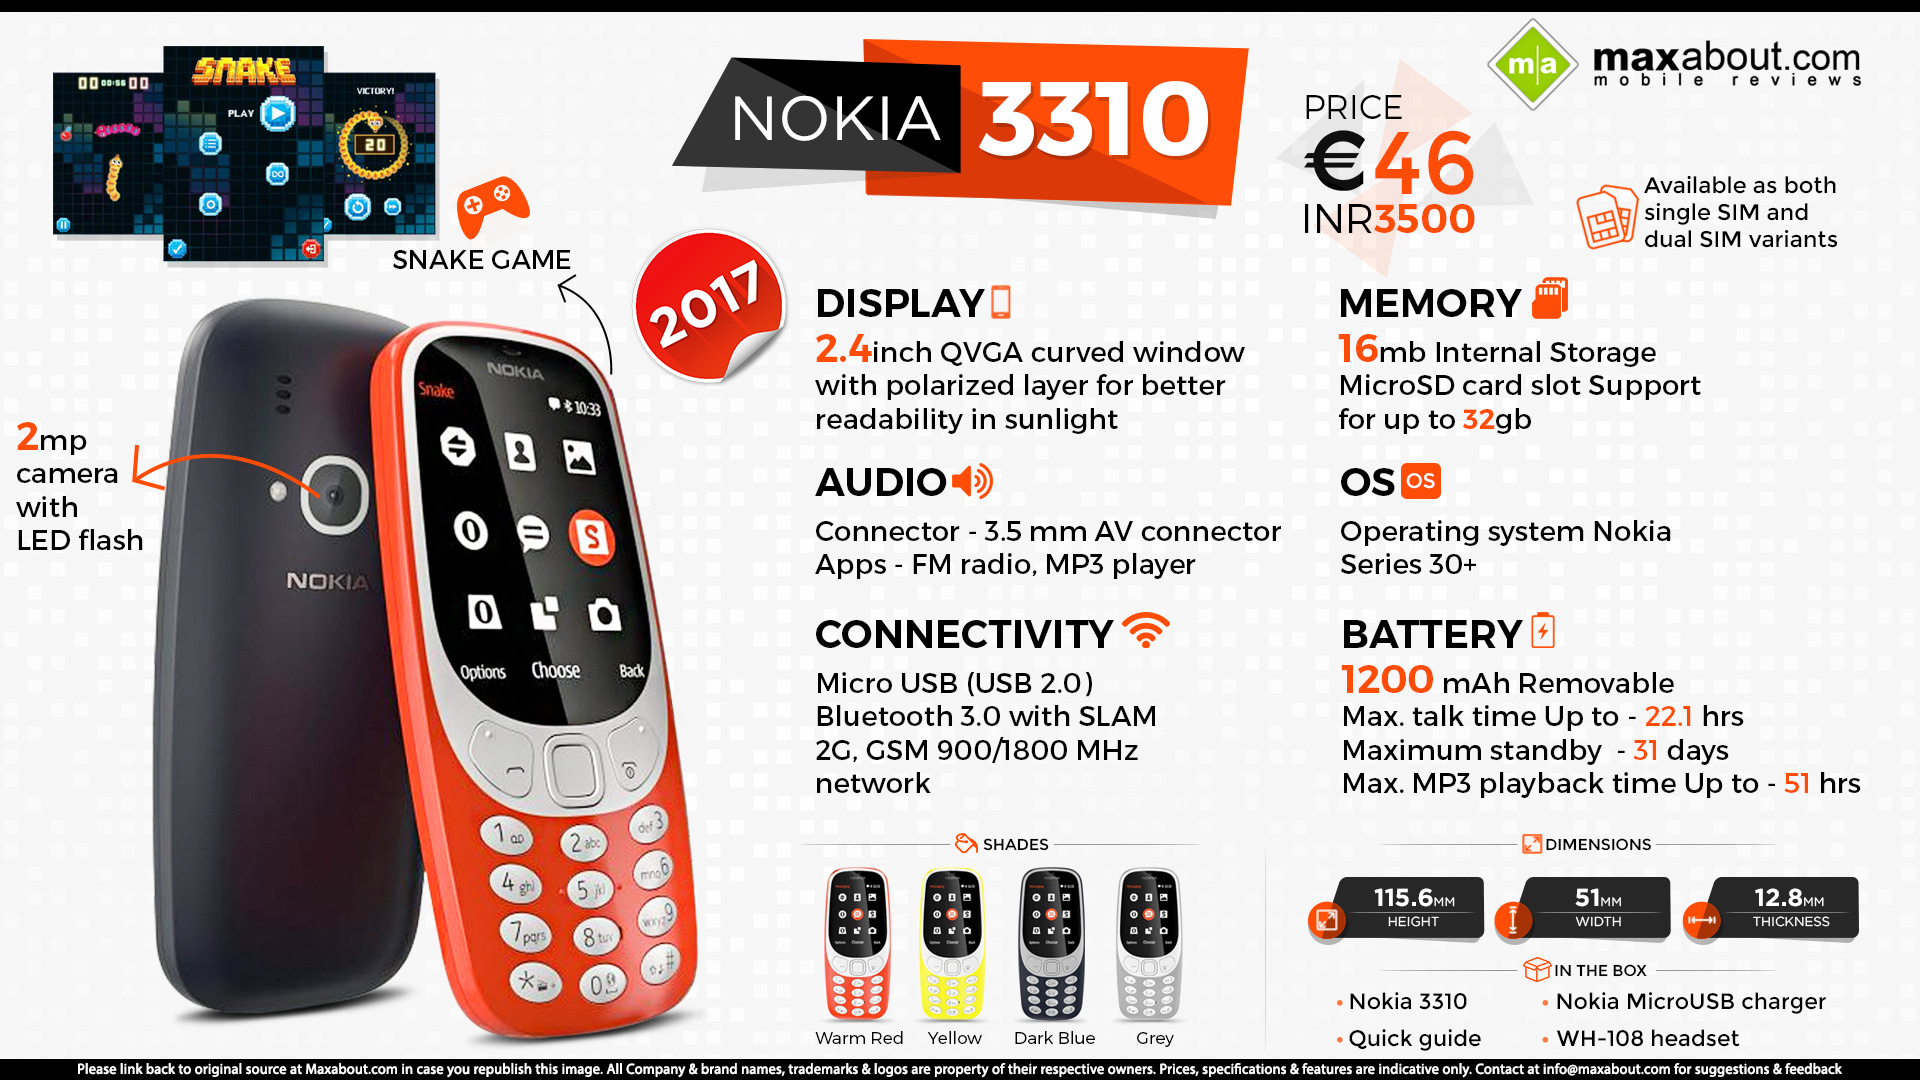 Nếu bạn là tín đồ của những chiếc điện thoại cổ điển, Nokia 3310 là một lựa chọn hoàn hảo cho bạn. Với thiết kế đẹp mắt, pin trâu, âm thanh to rõ và đầy đủ các chức năng cơ bản như gọi điện, nhắn tin và chơi game, Nokia 3310 2017 sẽ đem đến cho bạn những trải nghiệm tuyệt vời mà không một chiếc smartphone hiện đại nào có được.